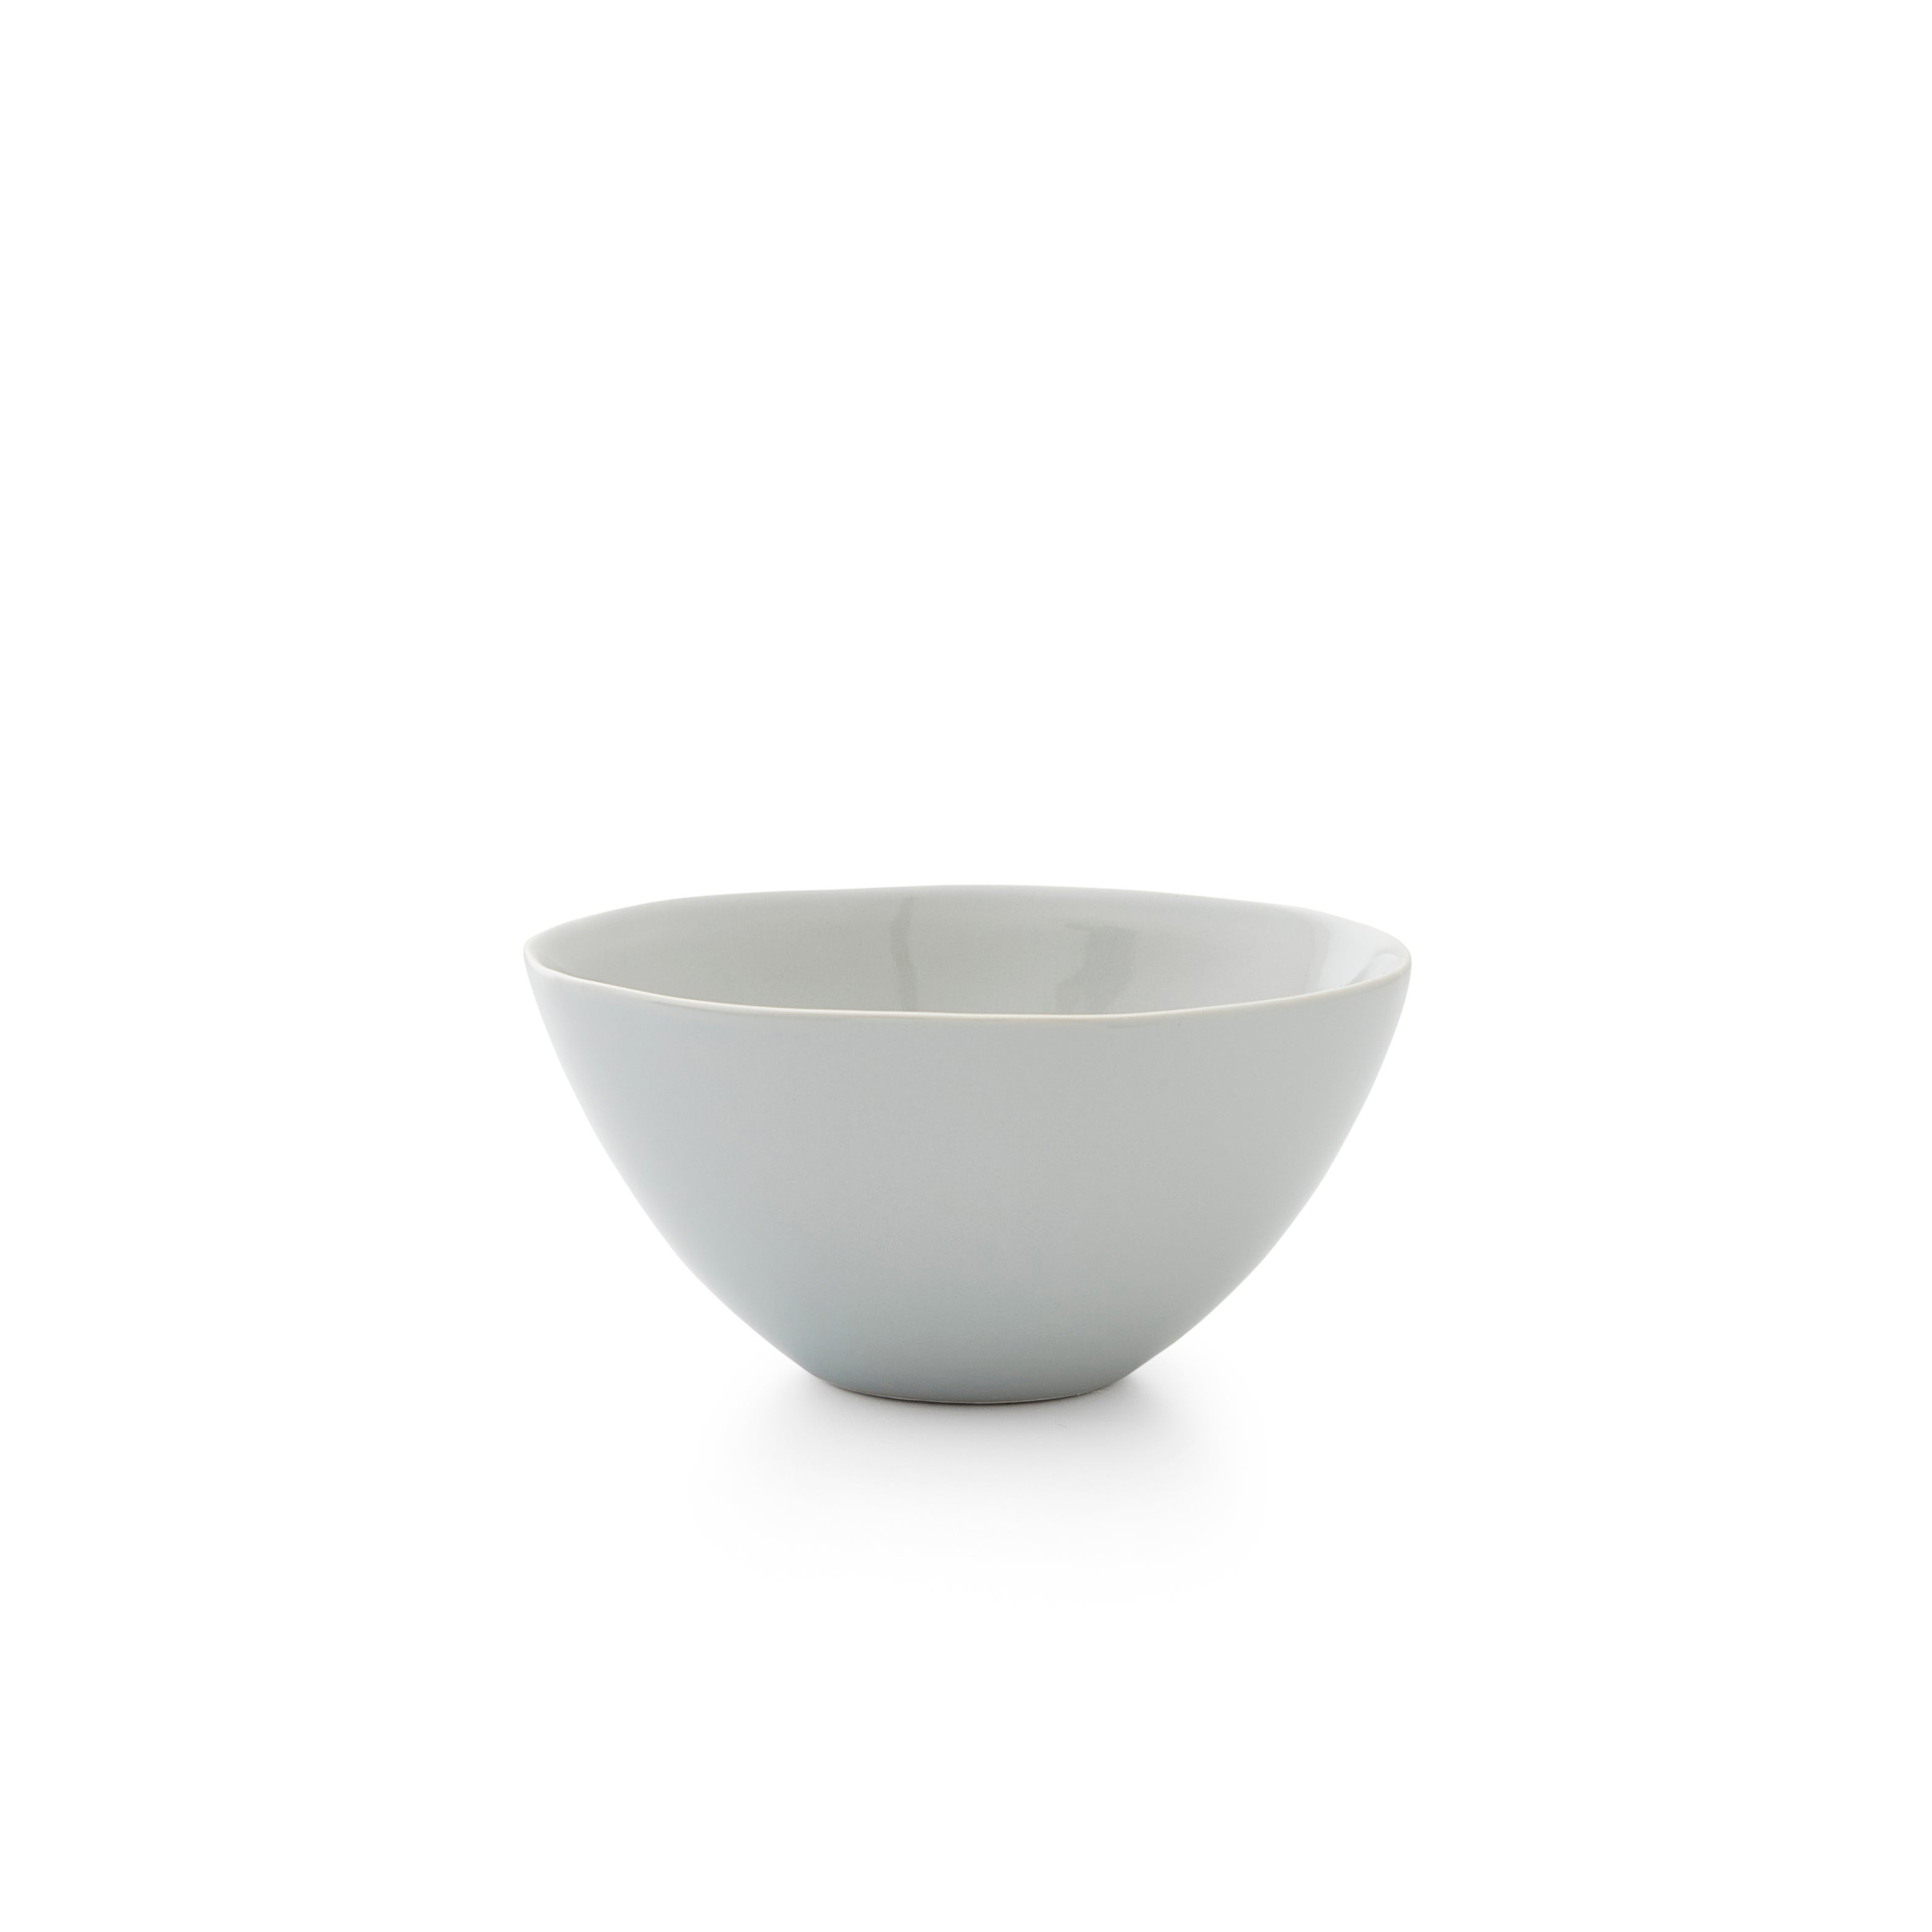 Sophie Conran for Portmeirion Set of 4 Medium All Purpose Bowls